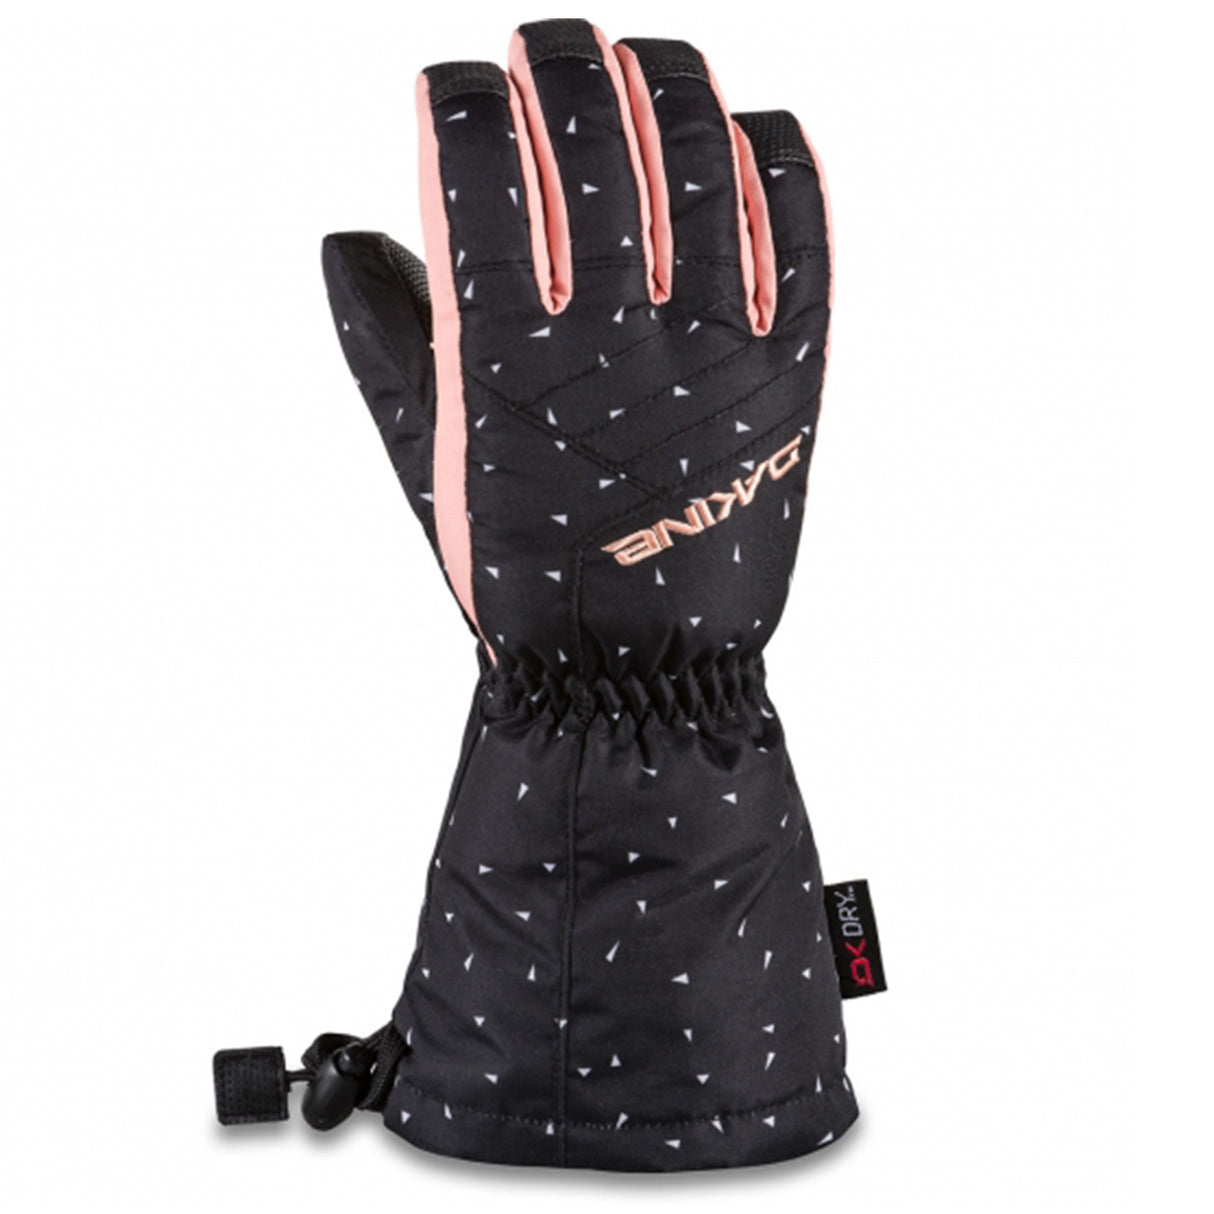 Tracker Glove